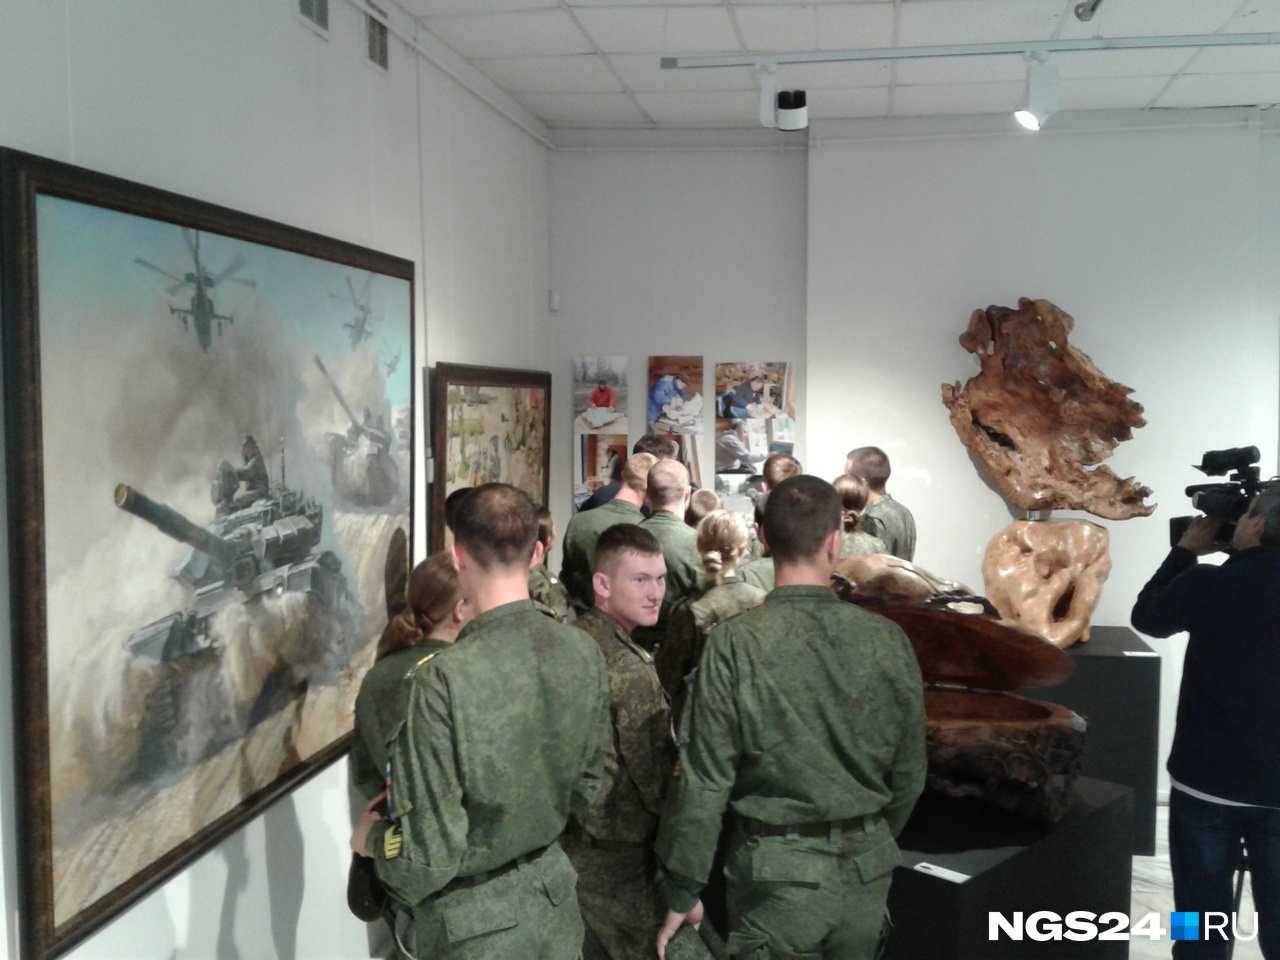 Ажиотаж у молодых кадетов вызвала мини-экспозиция фотографий Сергея Шойгу за работой по дереву